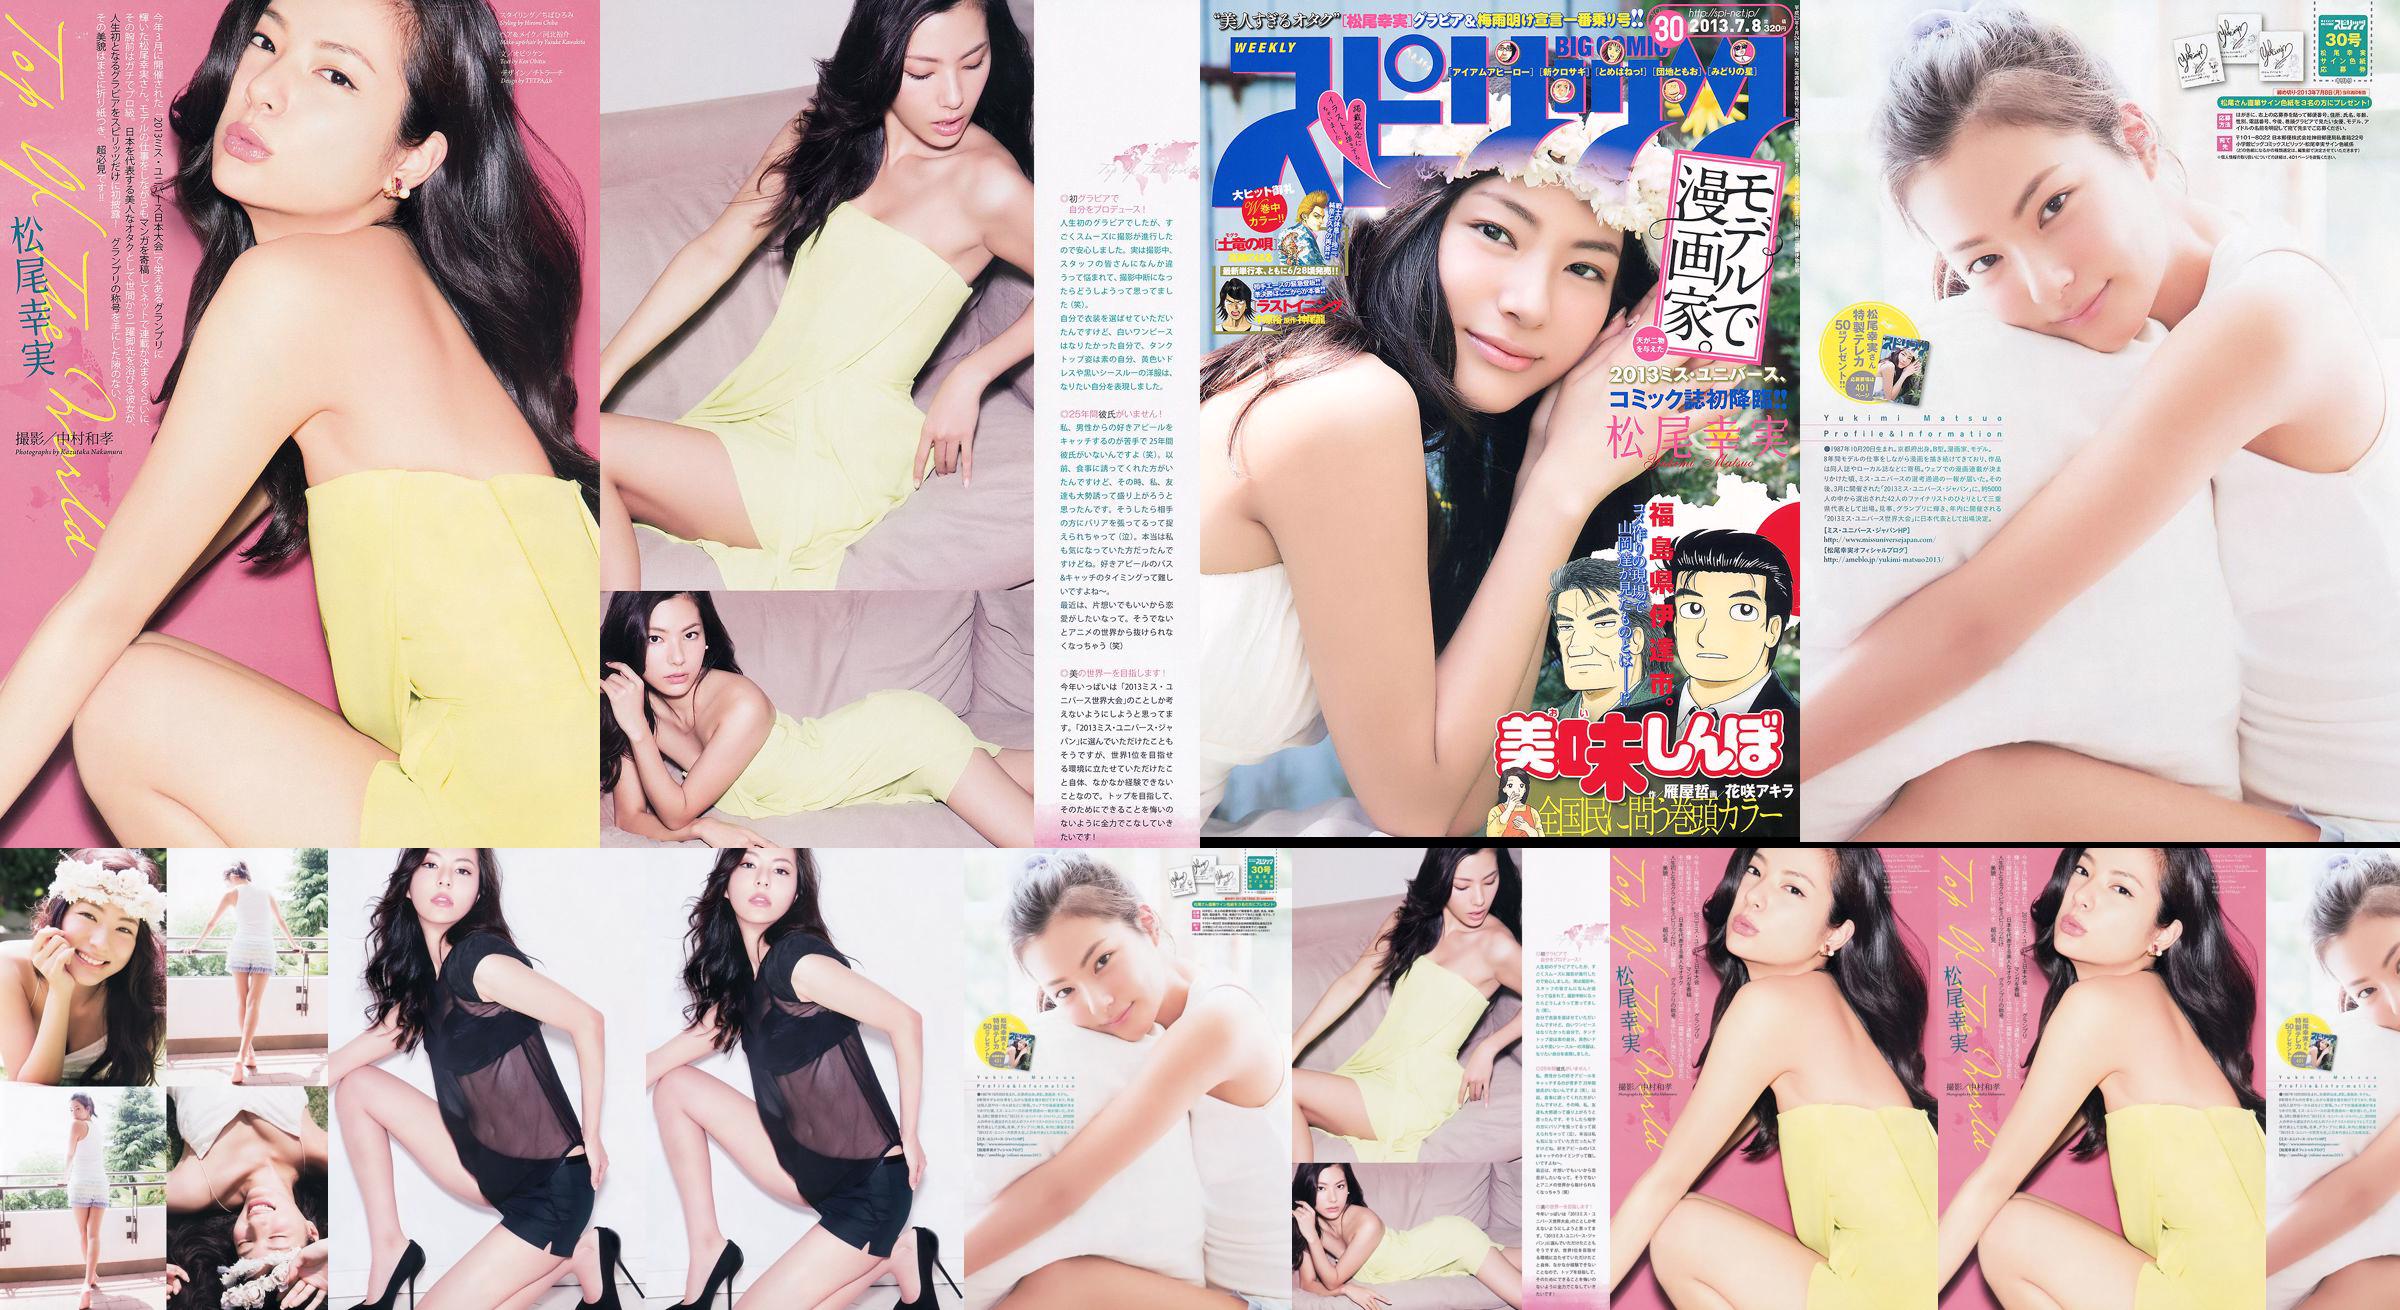 [Weekly Big Comic Spirits] Komi Matsuo 2013 No.30 Photo Magazine No.c4a65a Pagina 3